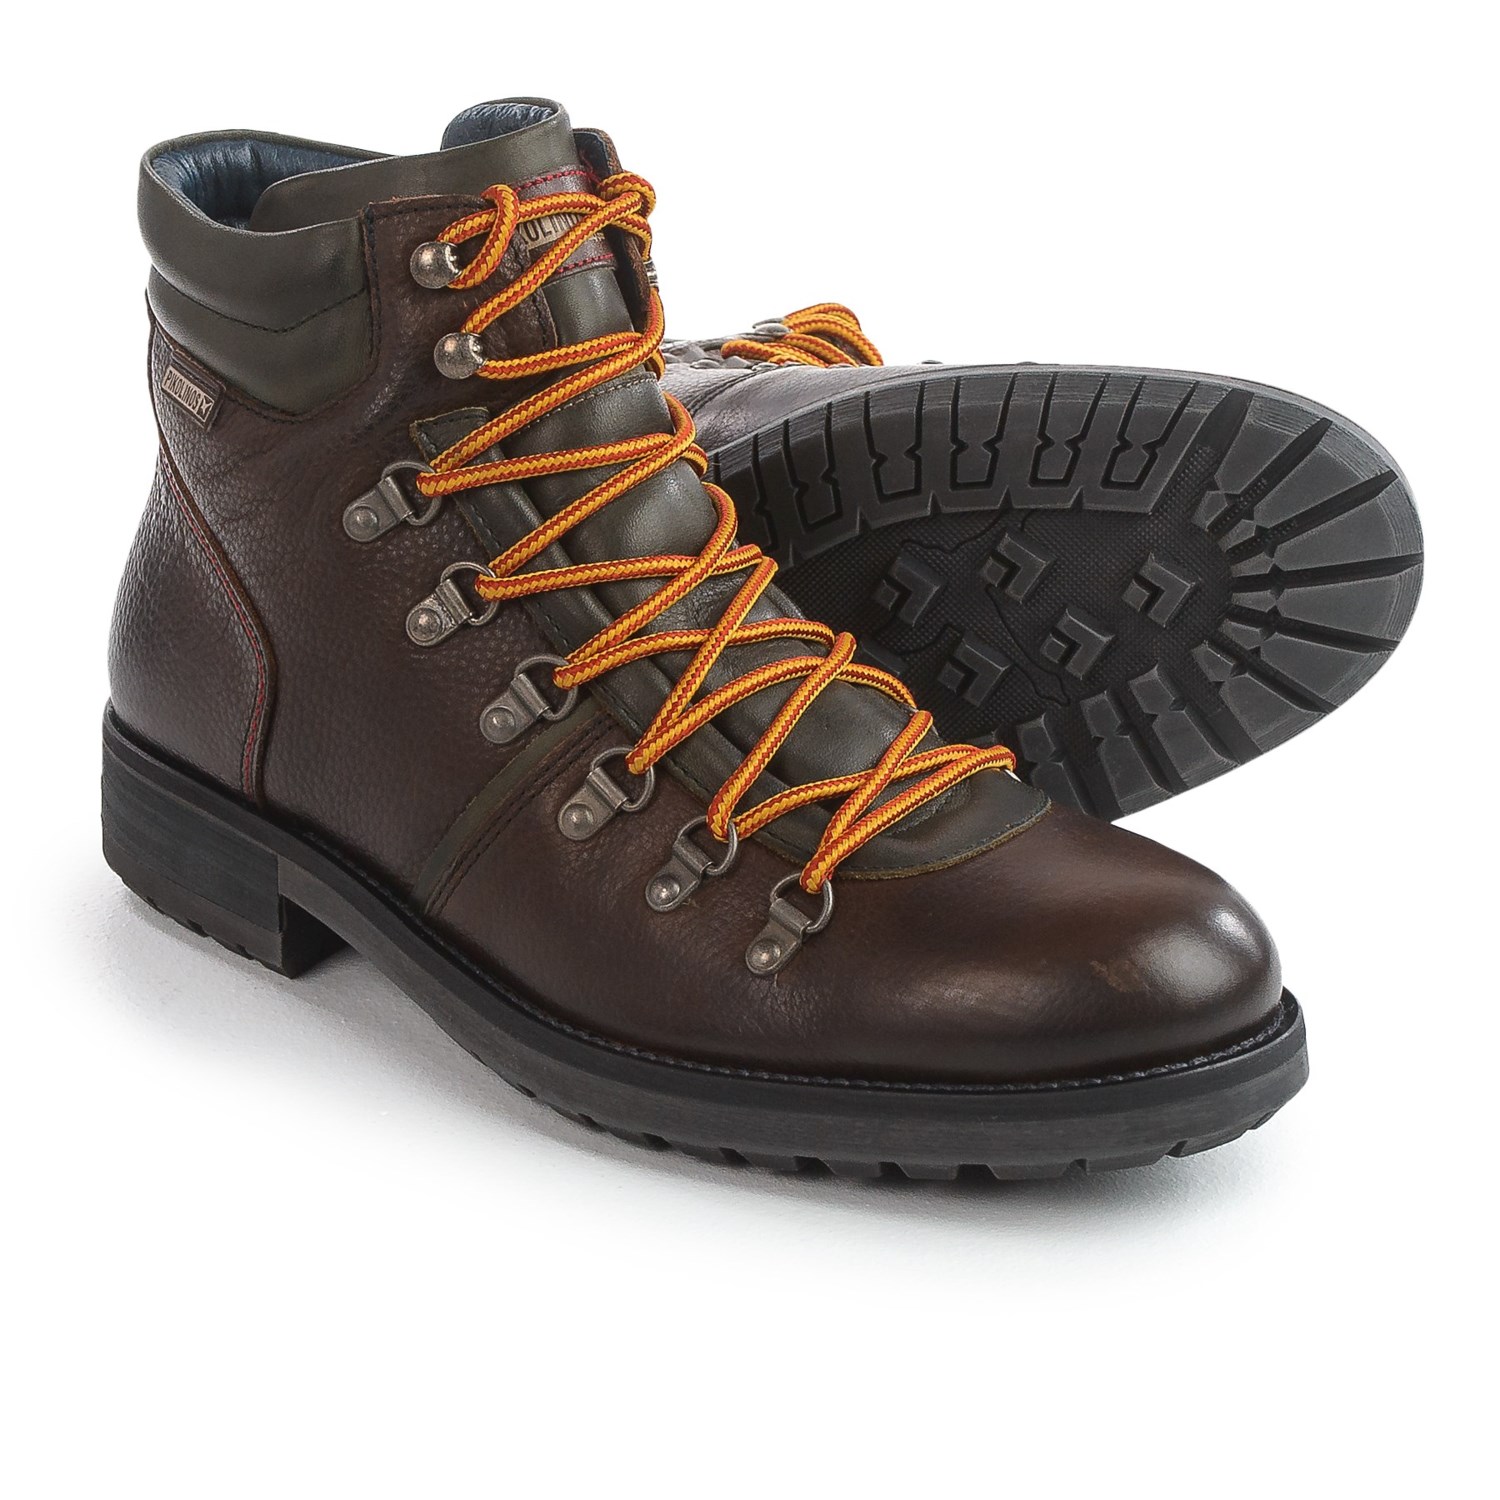 Pikolinos Ellesmere Leather Boots (For Men)